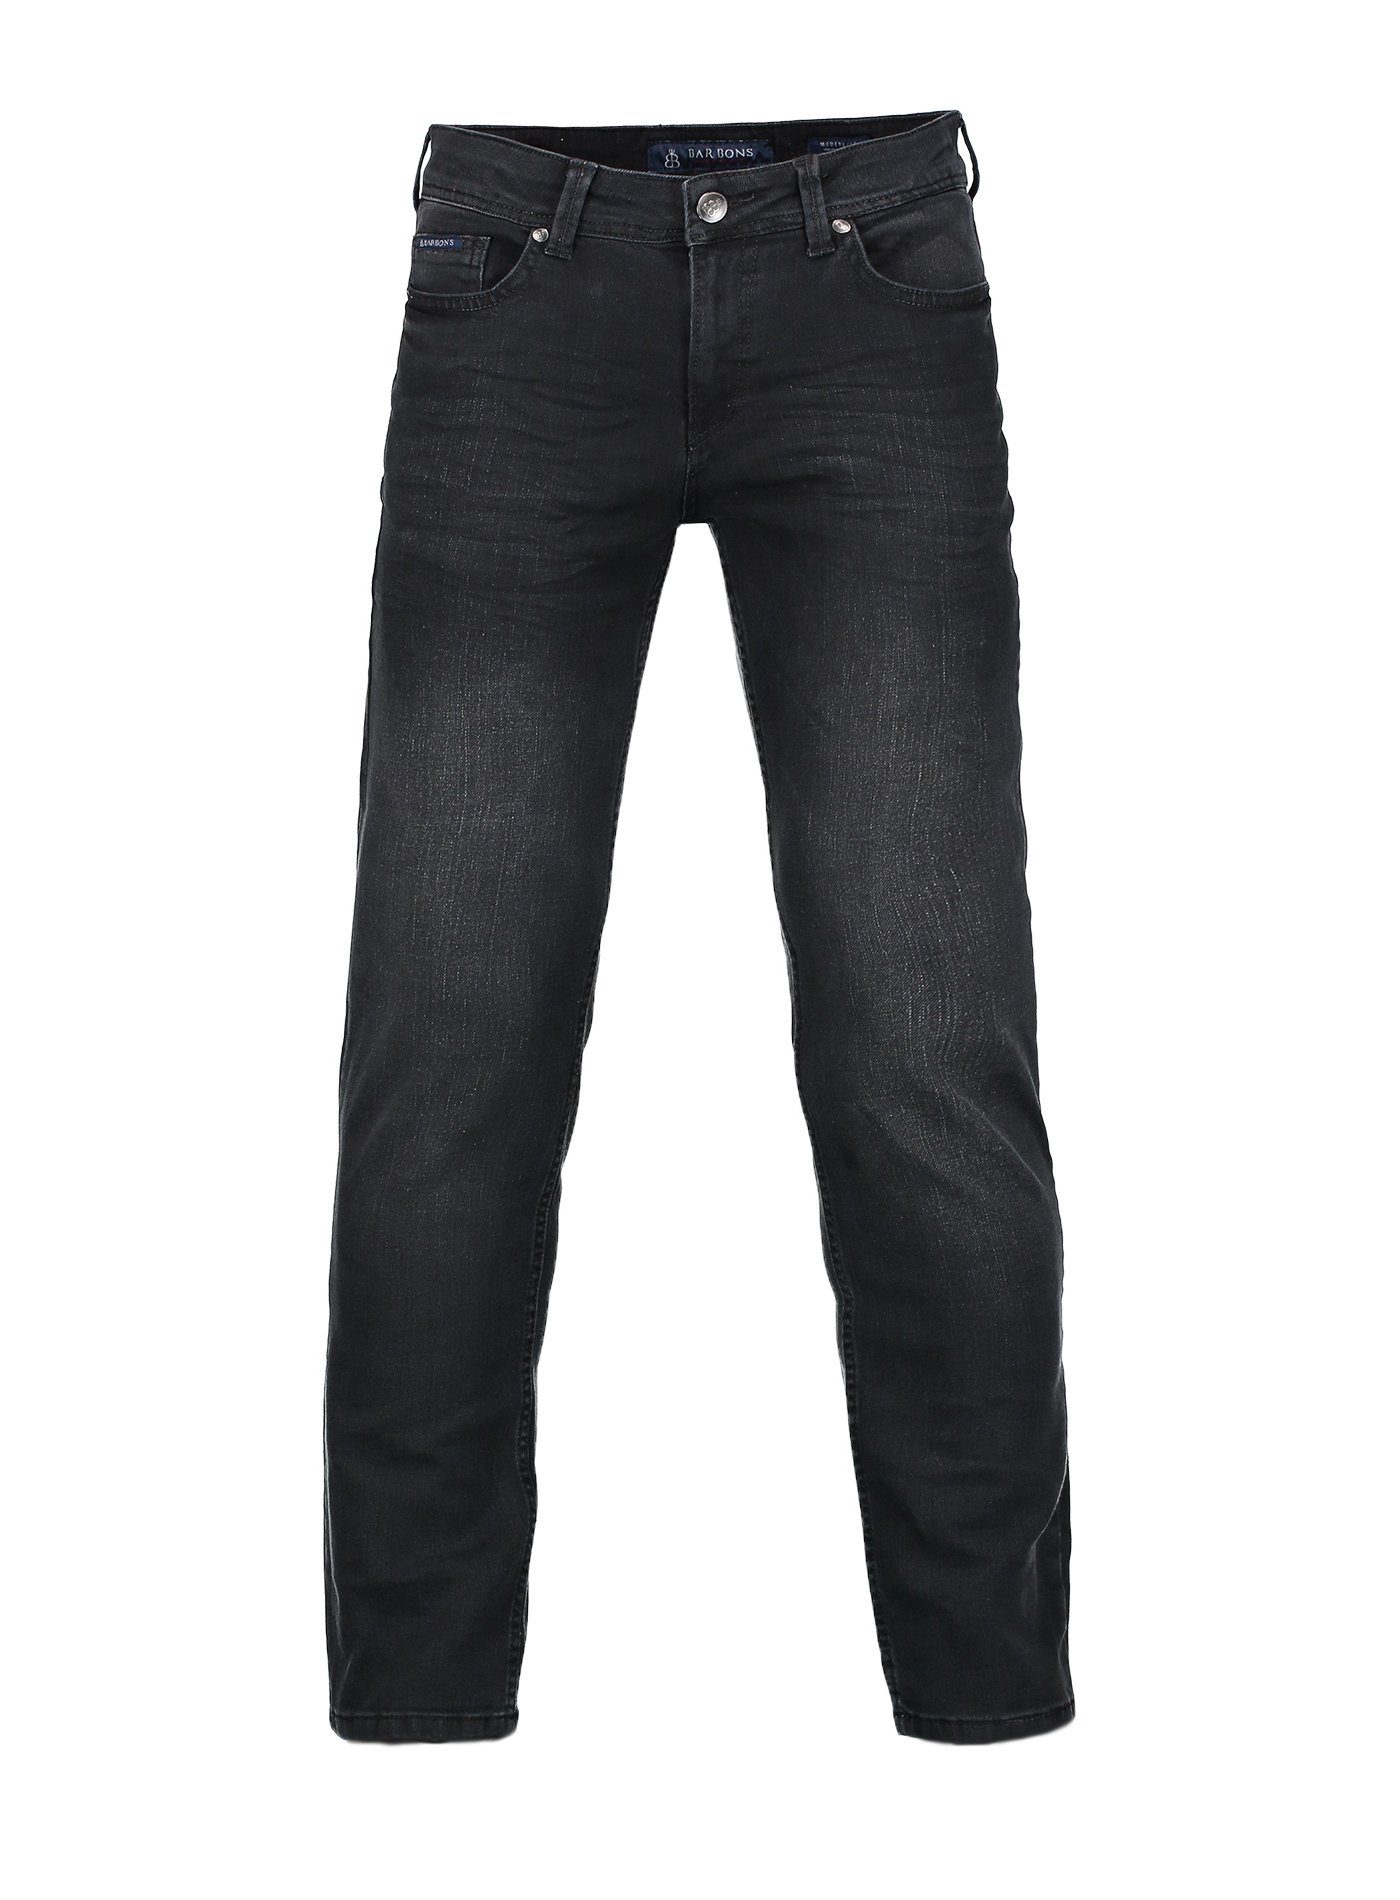 BARBONS 5-Pocket-Jeans Herren Regular 03-Schwarz Design Fit 5-Pocket